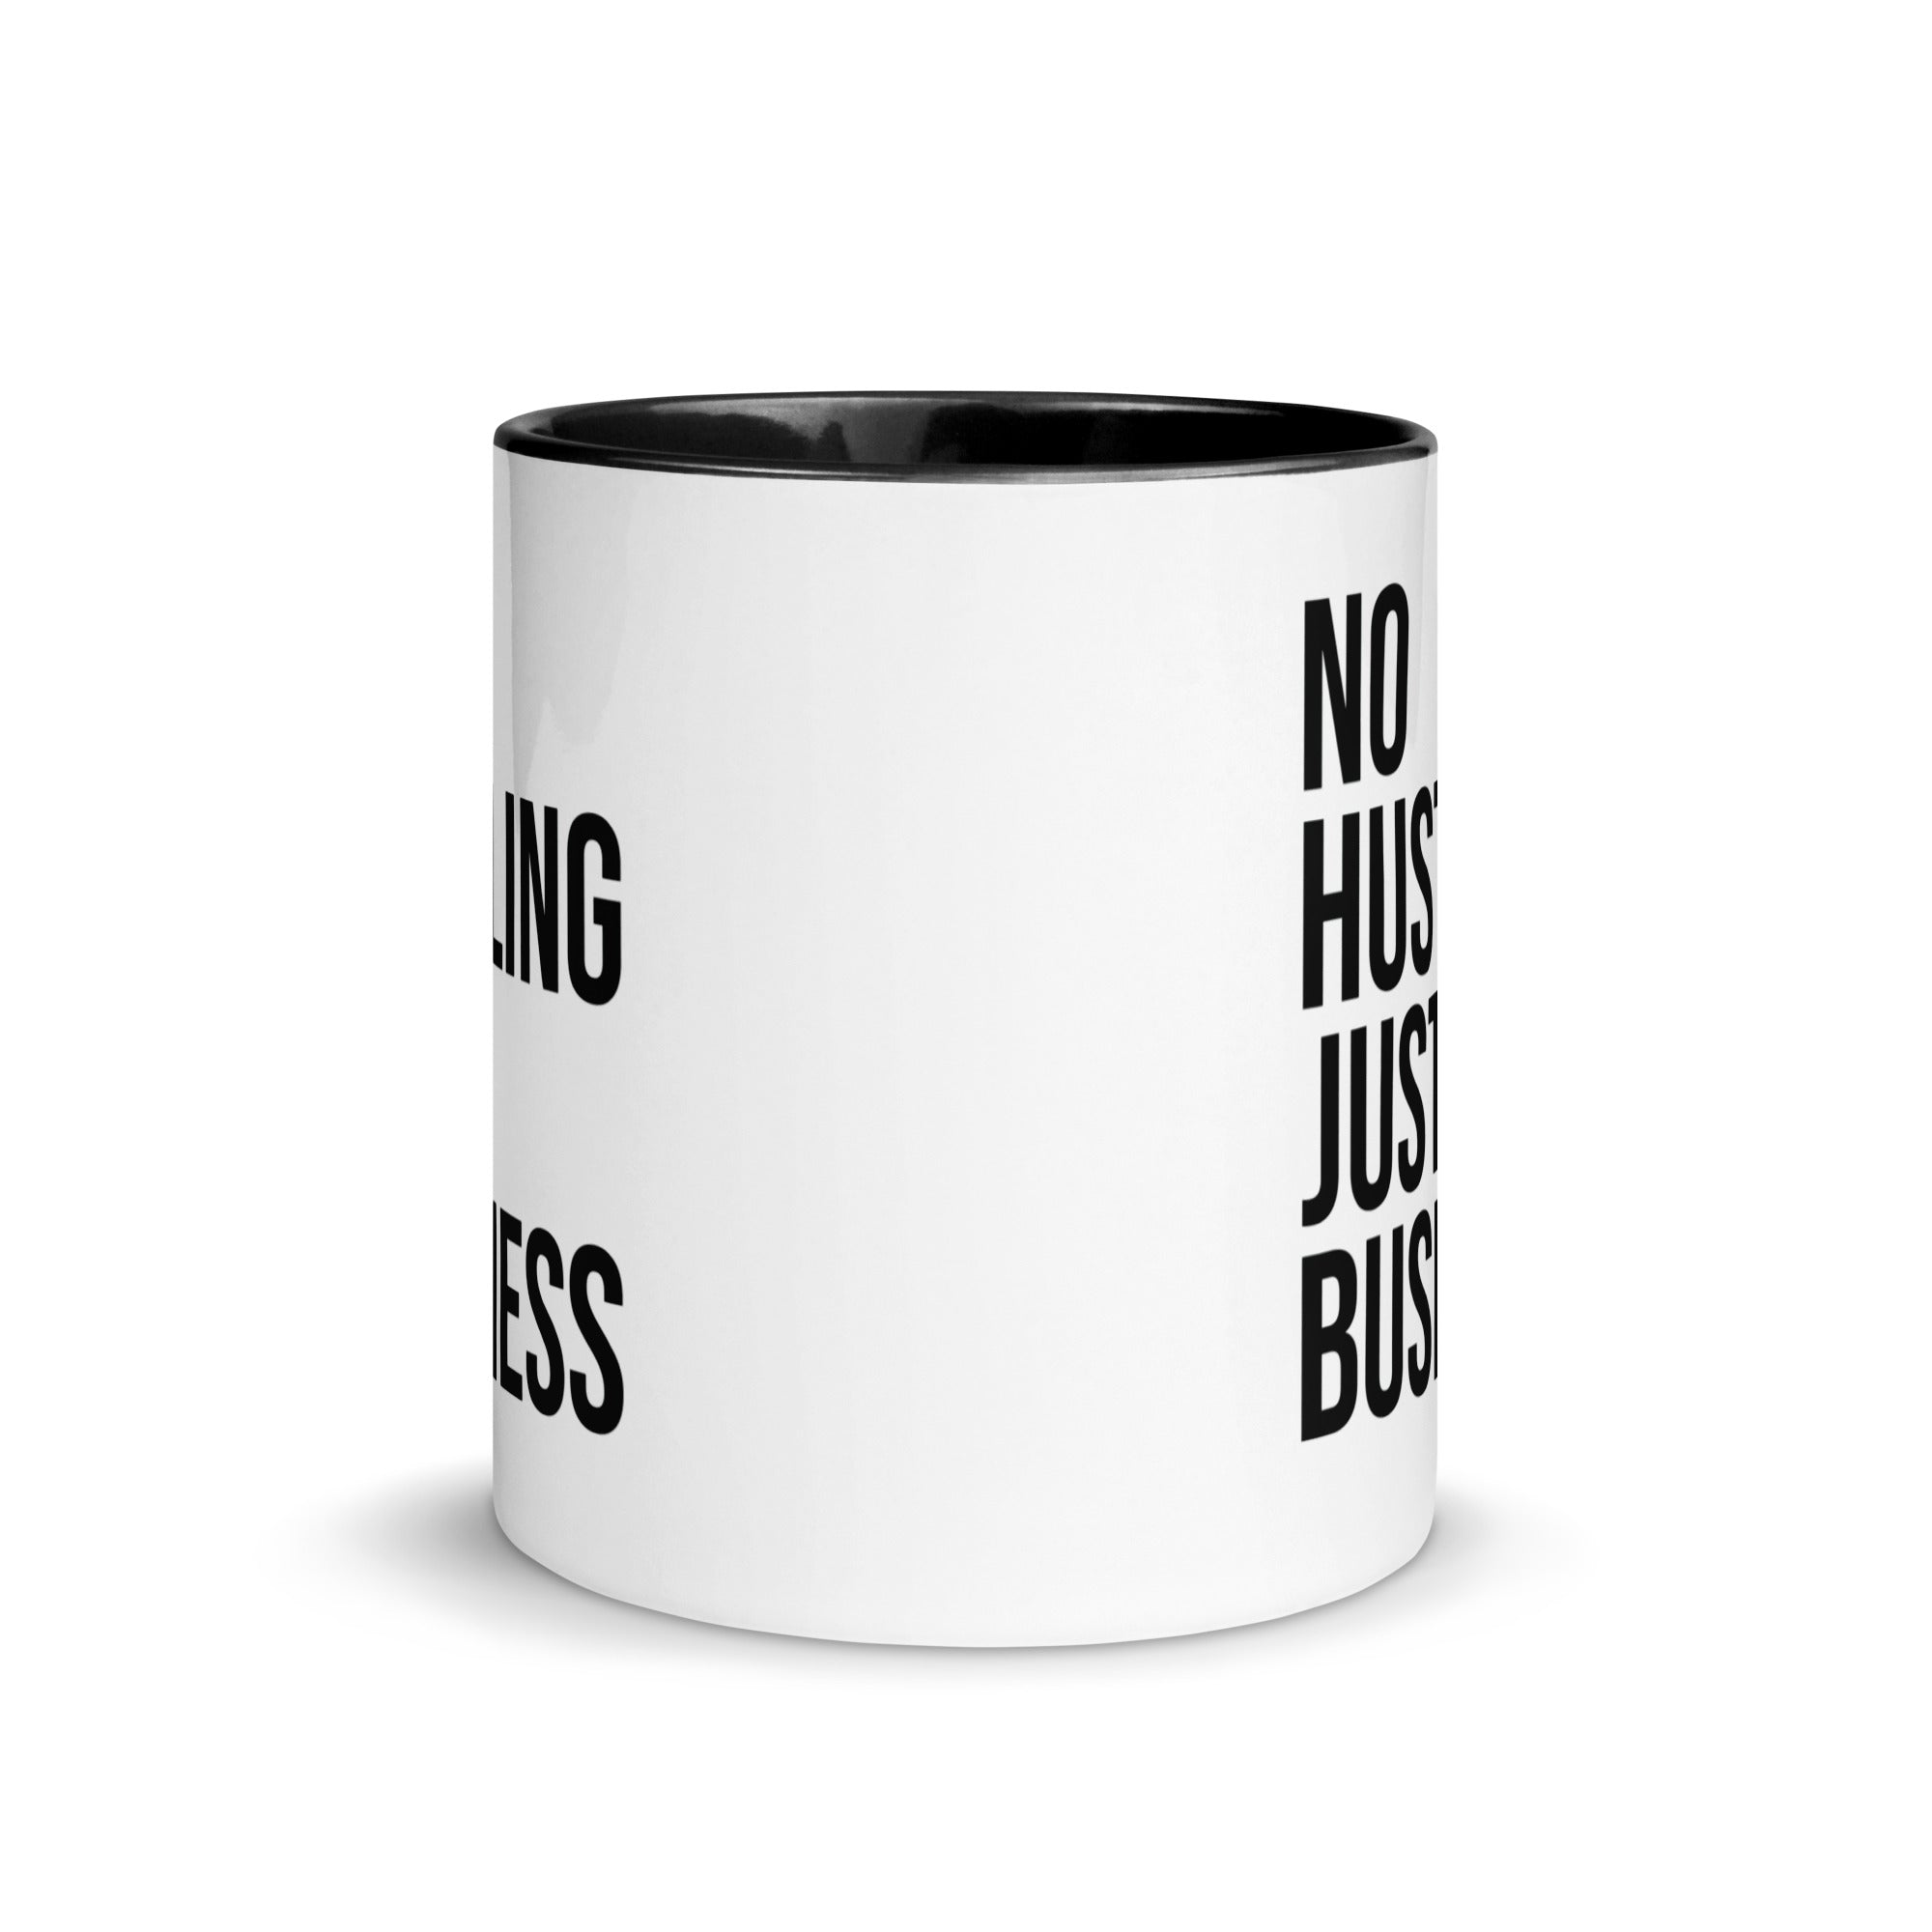 Mug with Color Inside | No hustling, just business